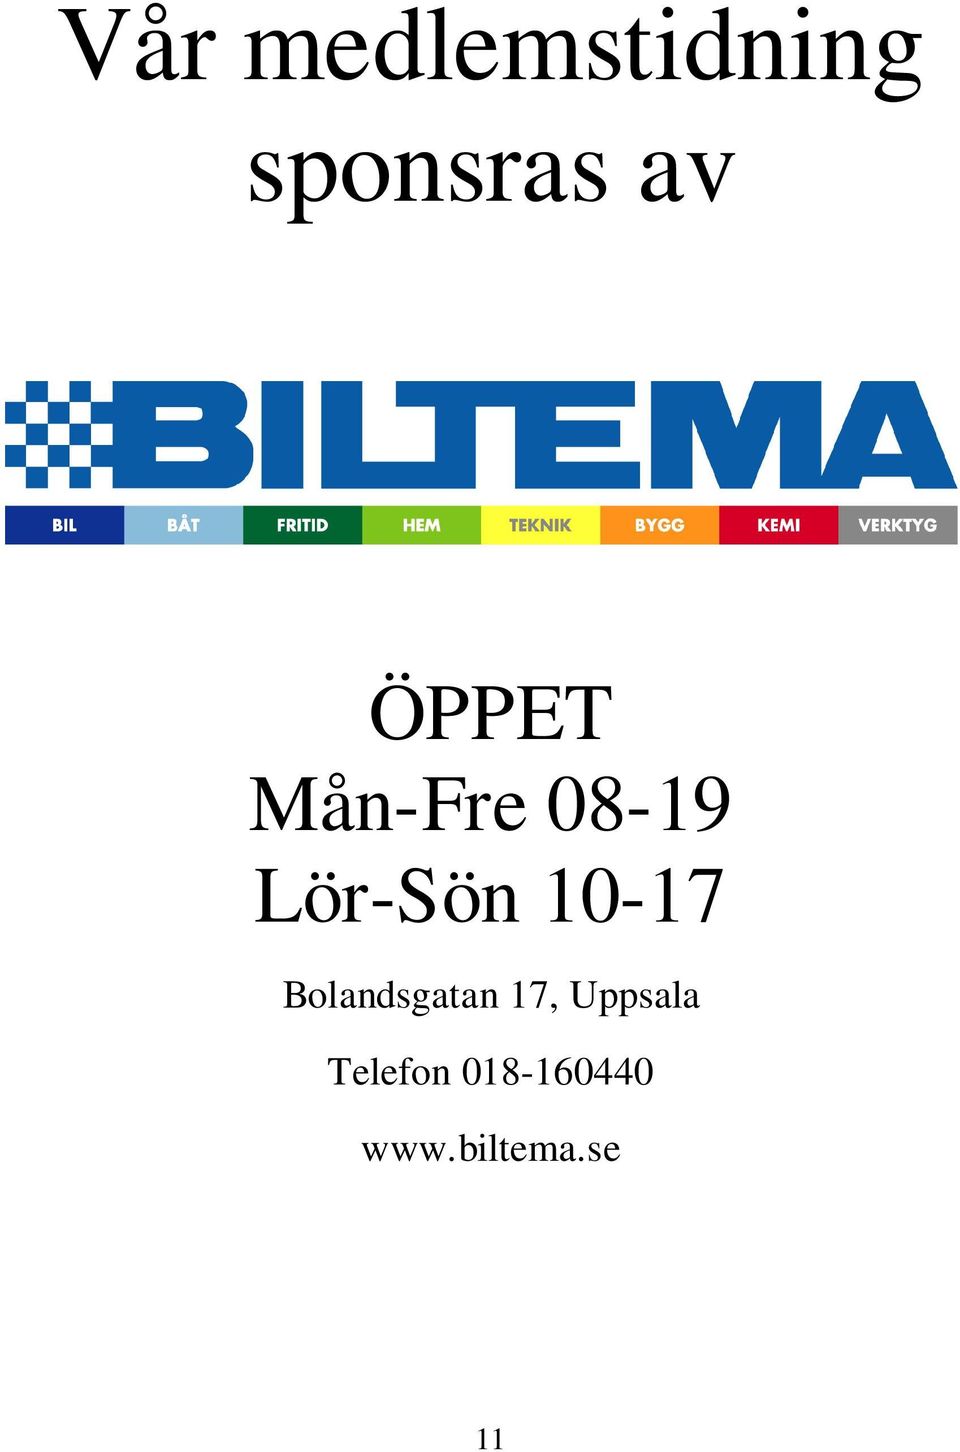 10-17 Bolandsgatan 17, Uppsala